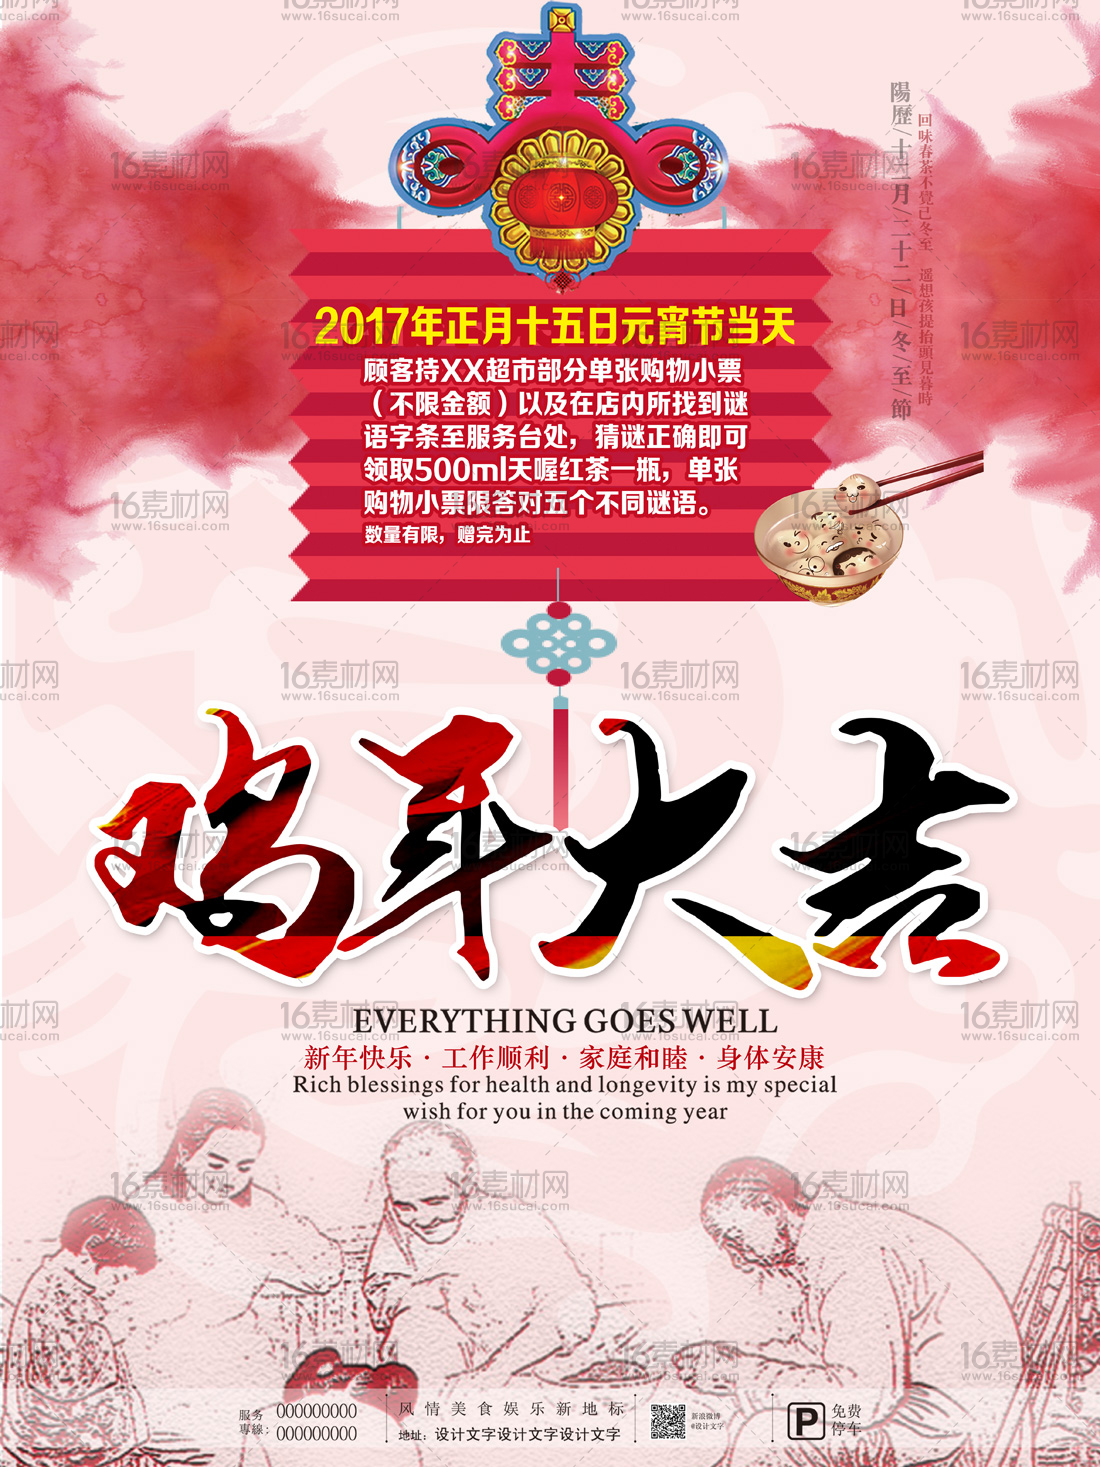 中式古典鸡年大吉宣传海报psd分层素材